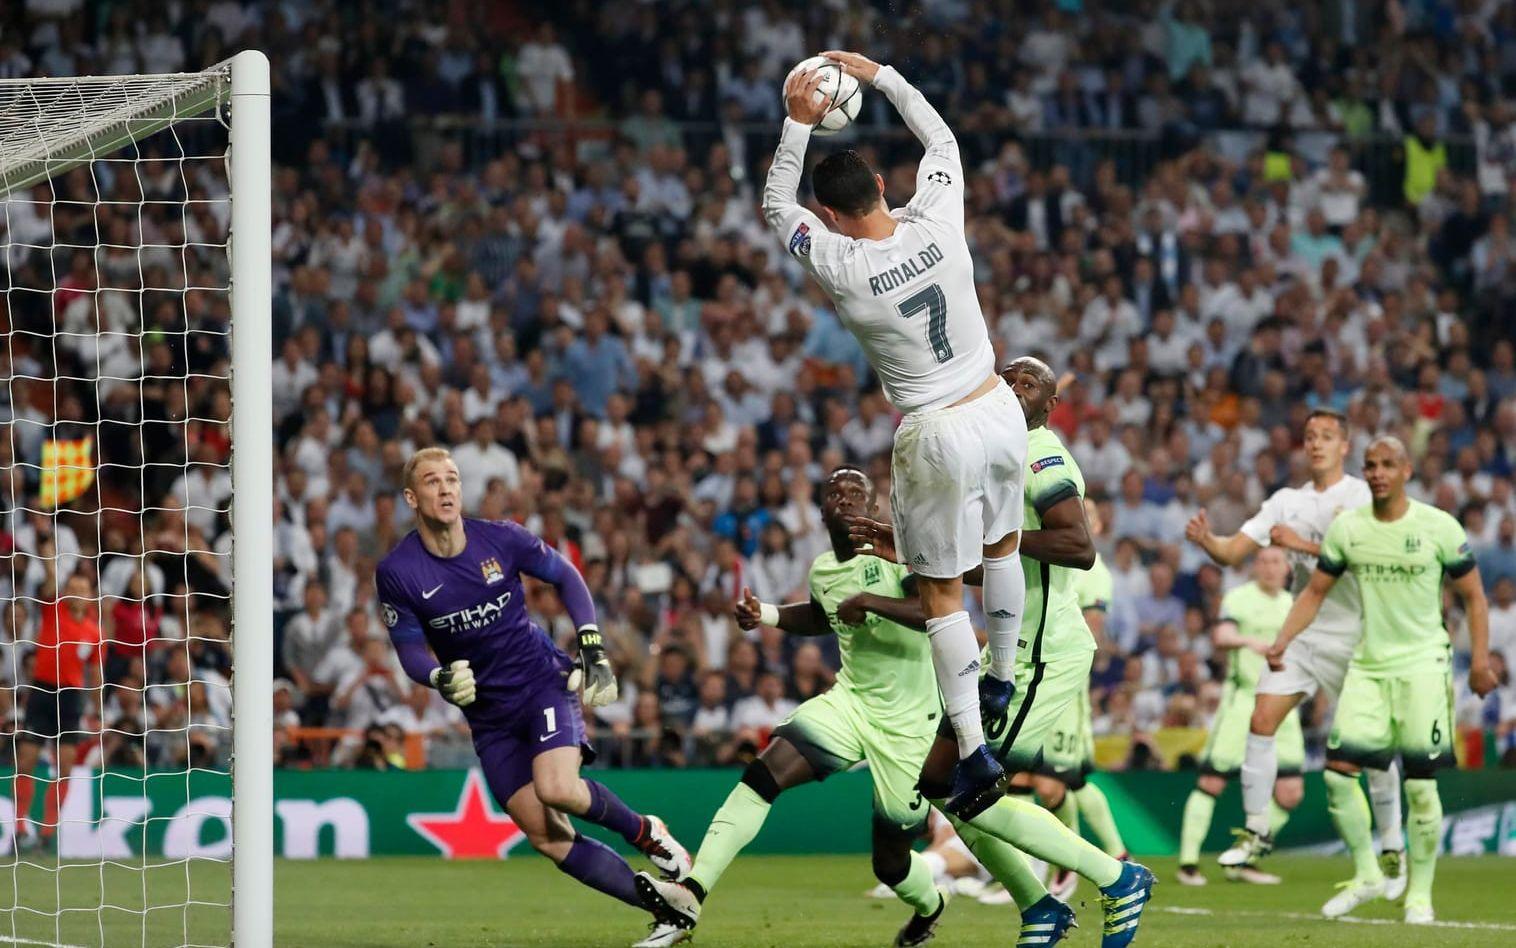 Cristiano Ronaldo var på desperat måljakt i den andra halvleken. Foto: Bildbyrån